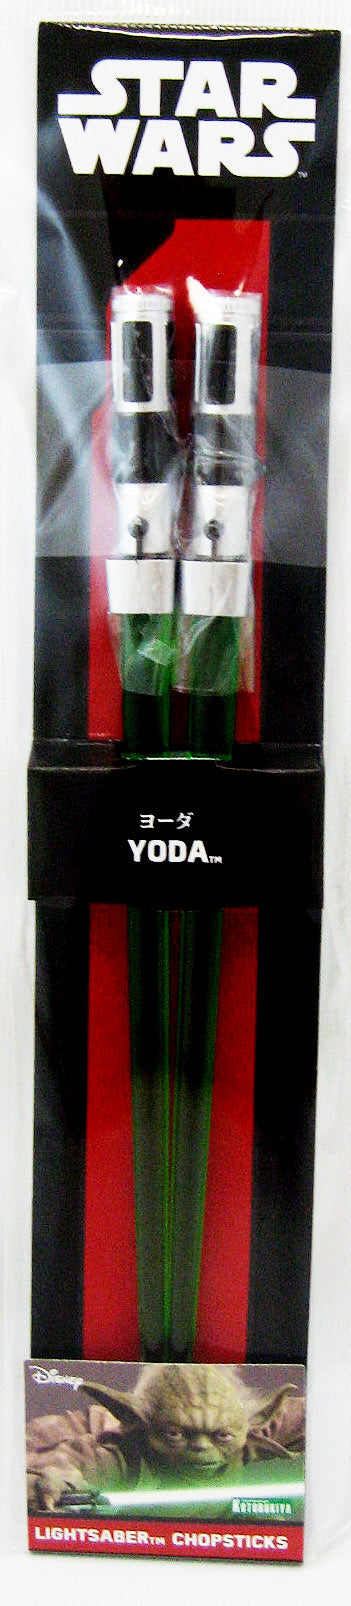 Star Wars 7 Inch Houseware Chopsticks - Yoda Lightsaber Chopstick